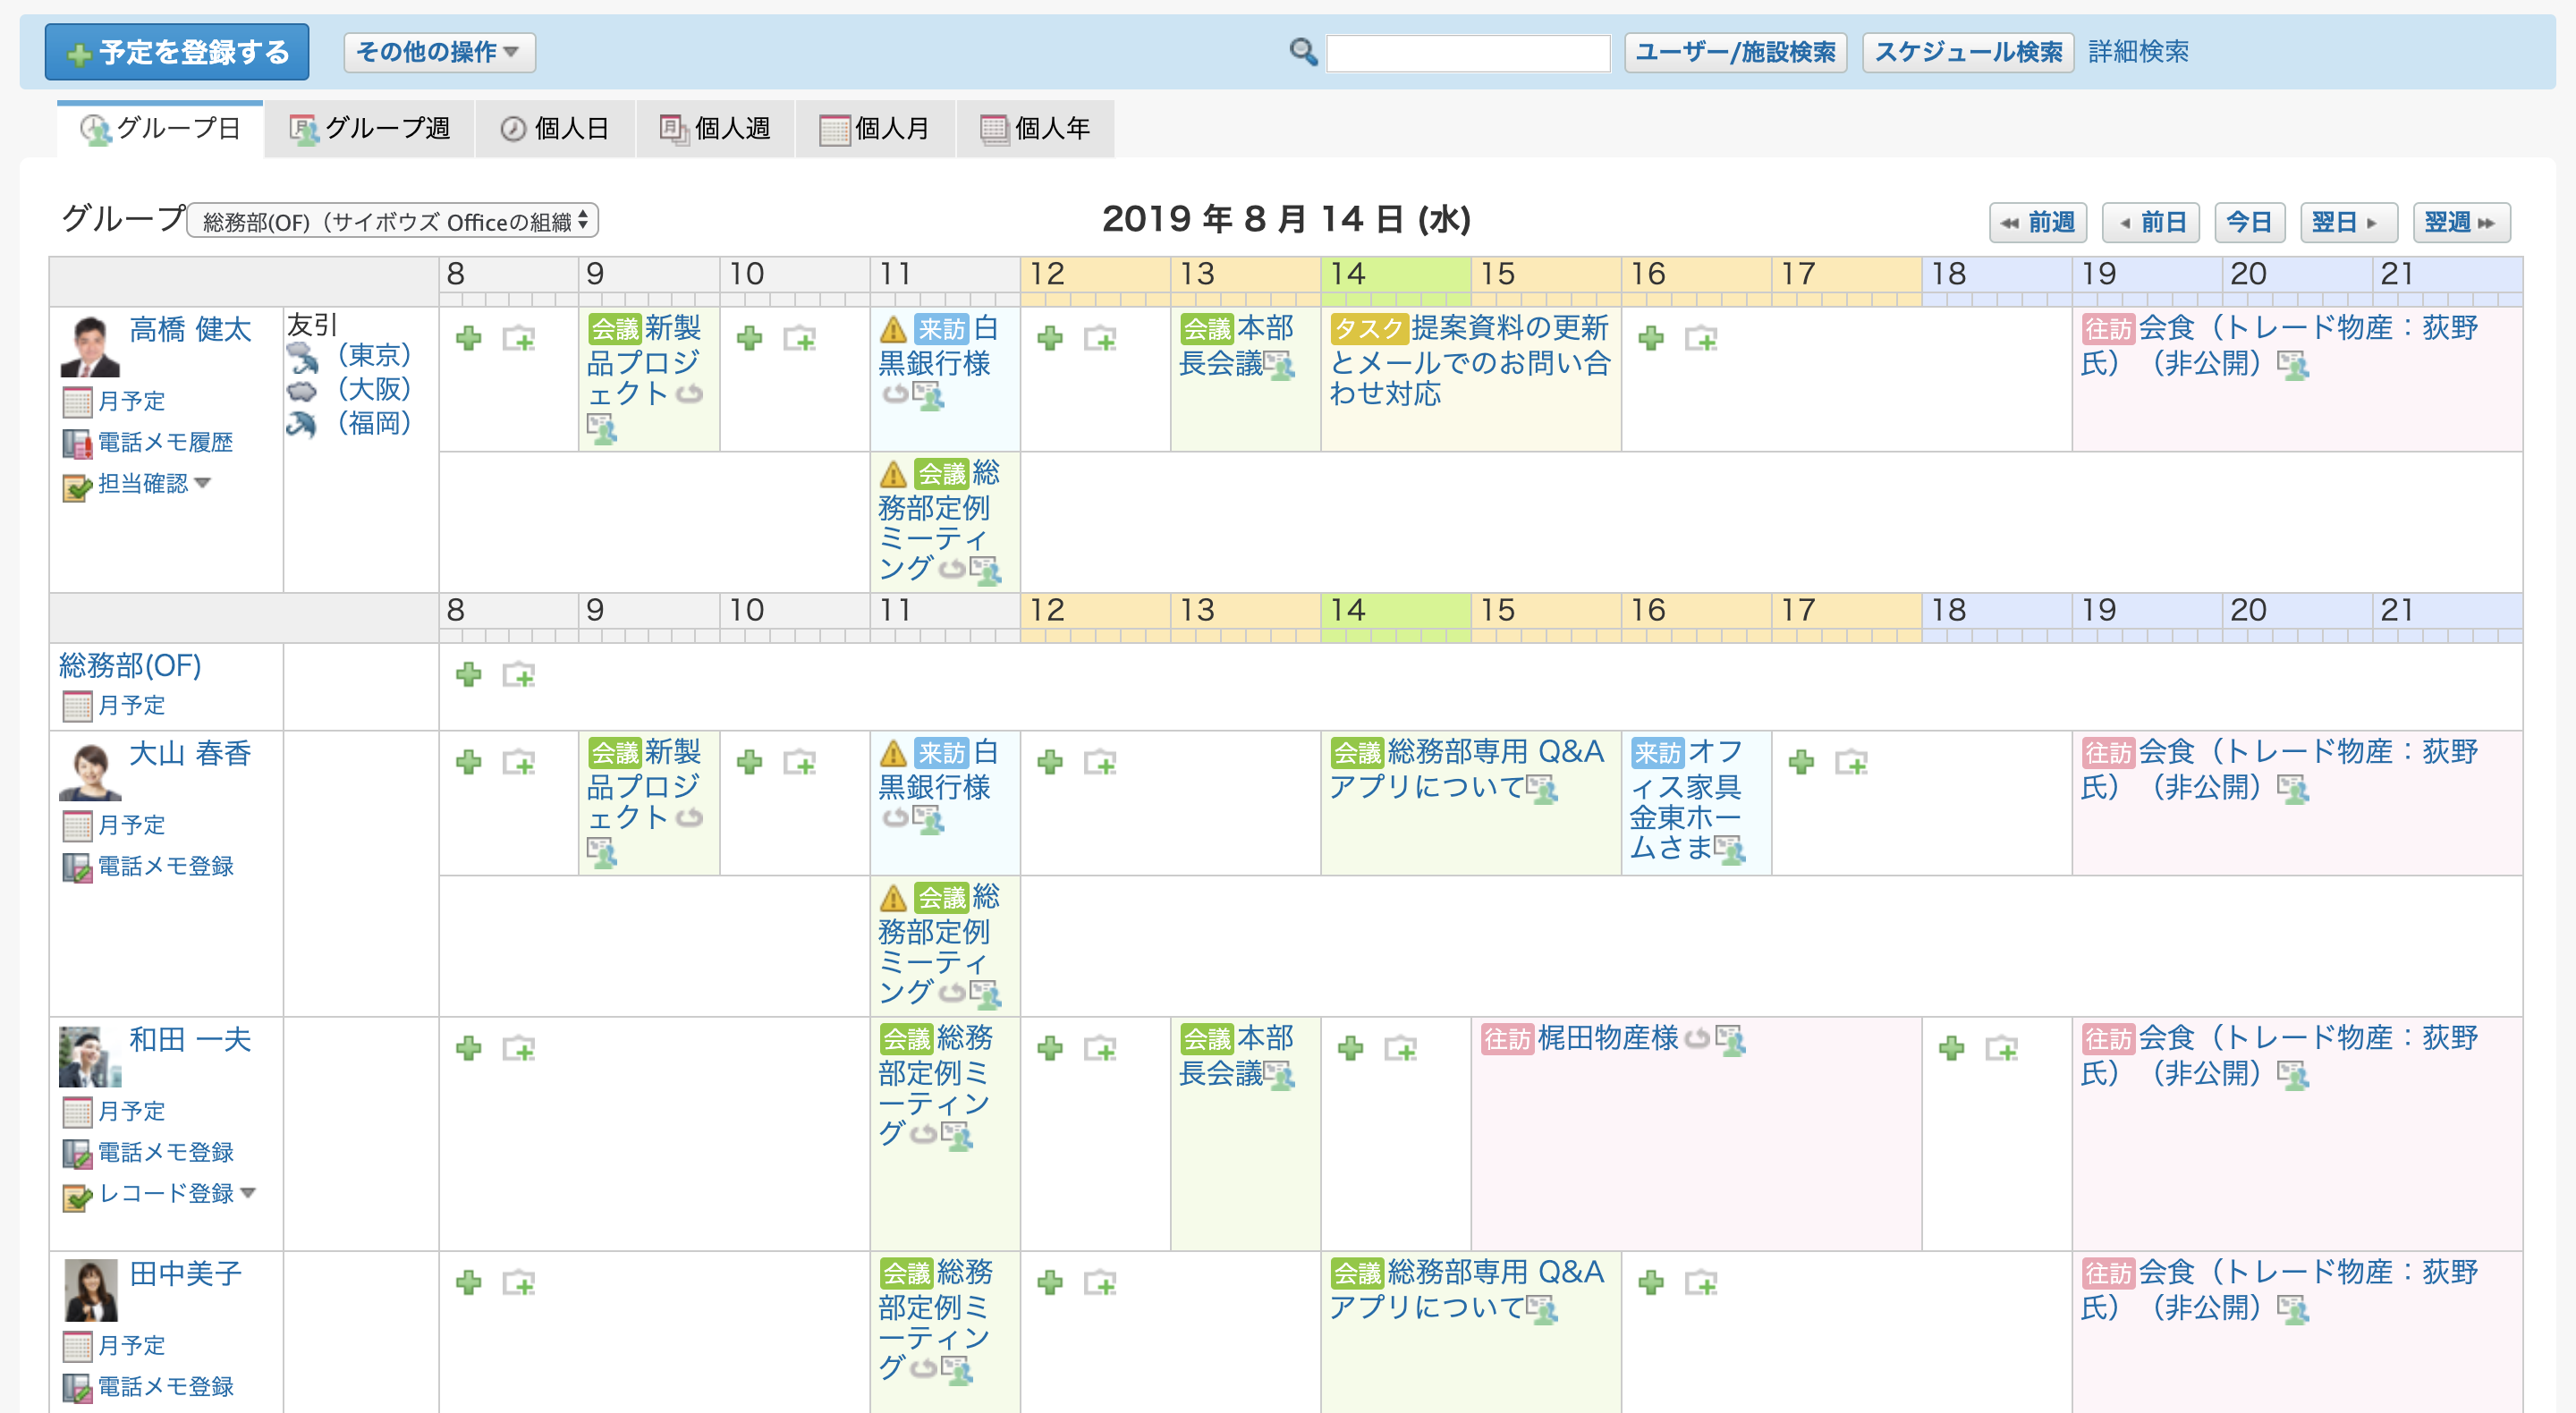 schedule_group_hihyouji.png